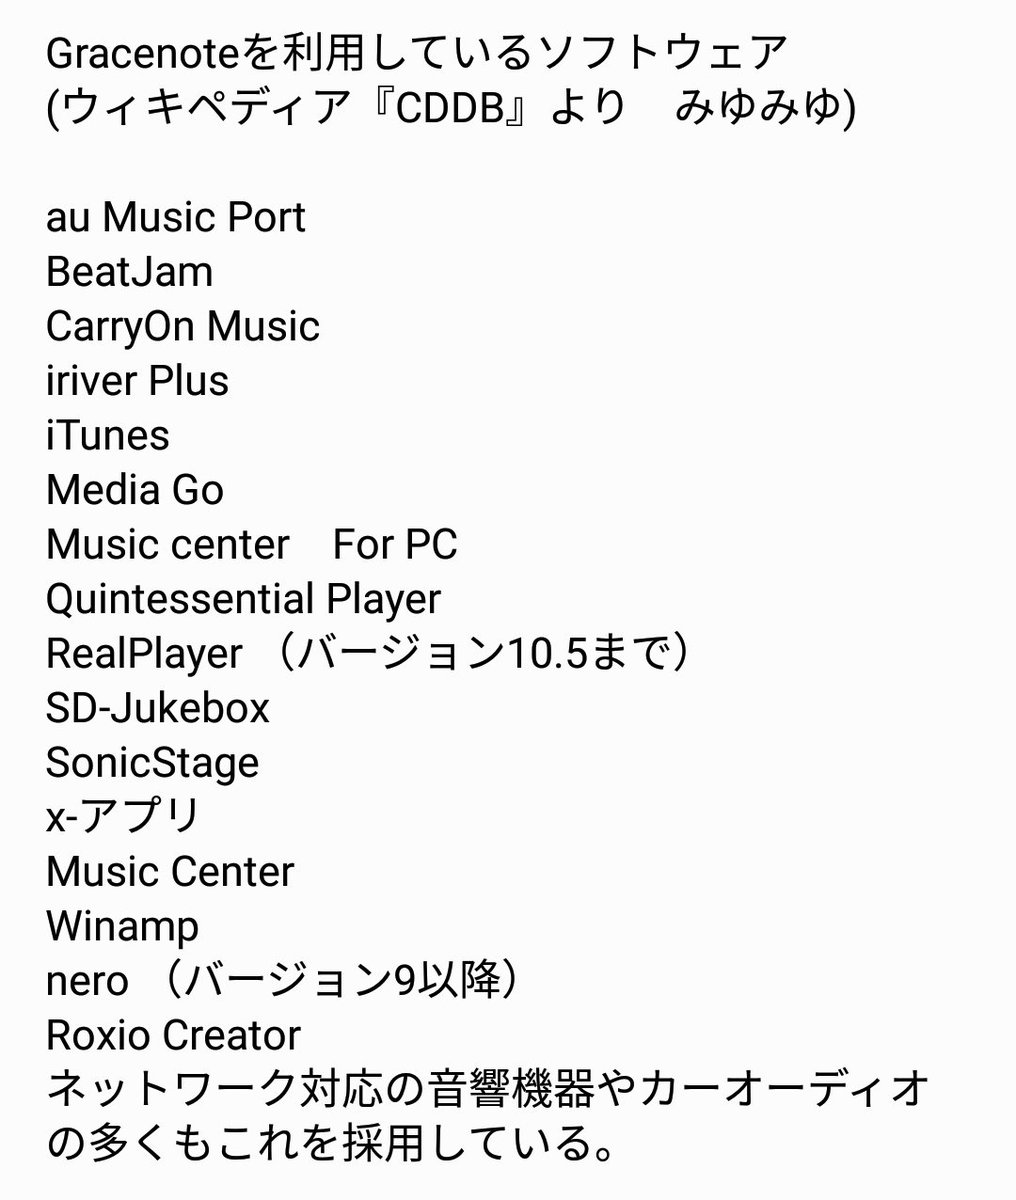 みゆみゆ ʚ ɞ Billboard ルックアップ 6 動画編集書込ソフト Roxio Creator 私の は富士通製で初めからroxio Creator Ljが入っていますが 音楽cdは取り込めません 有料版ならできる Nero Nero Platinum 18 Suitの15日無料体験版で